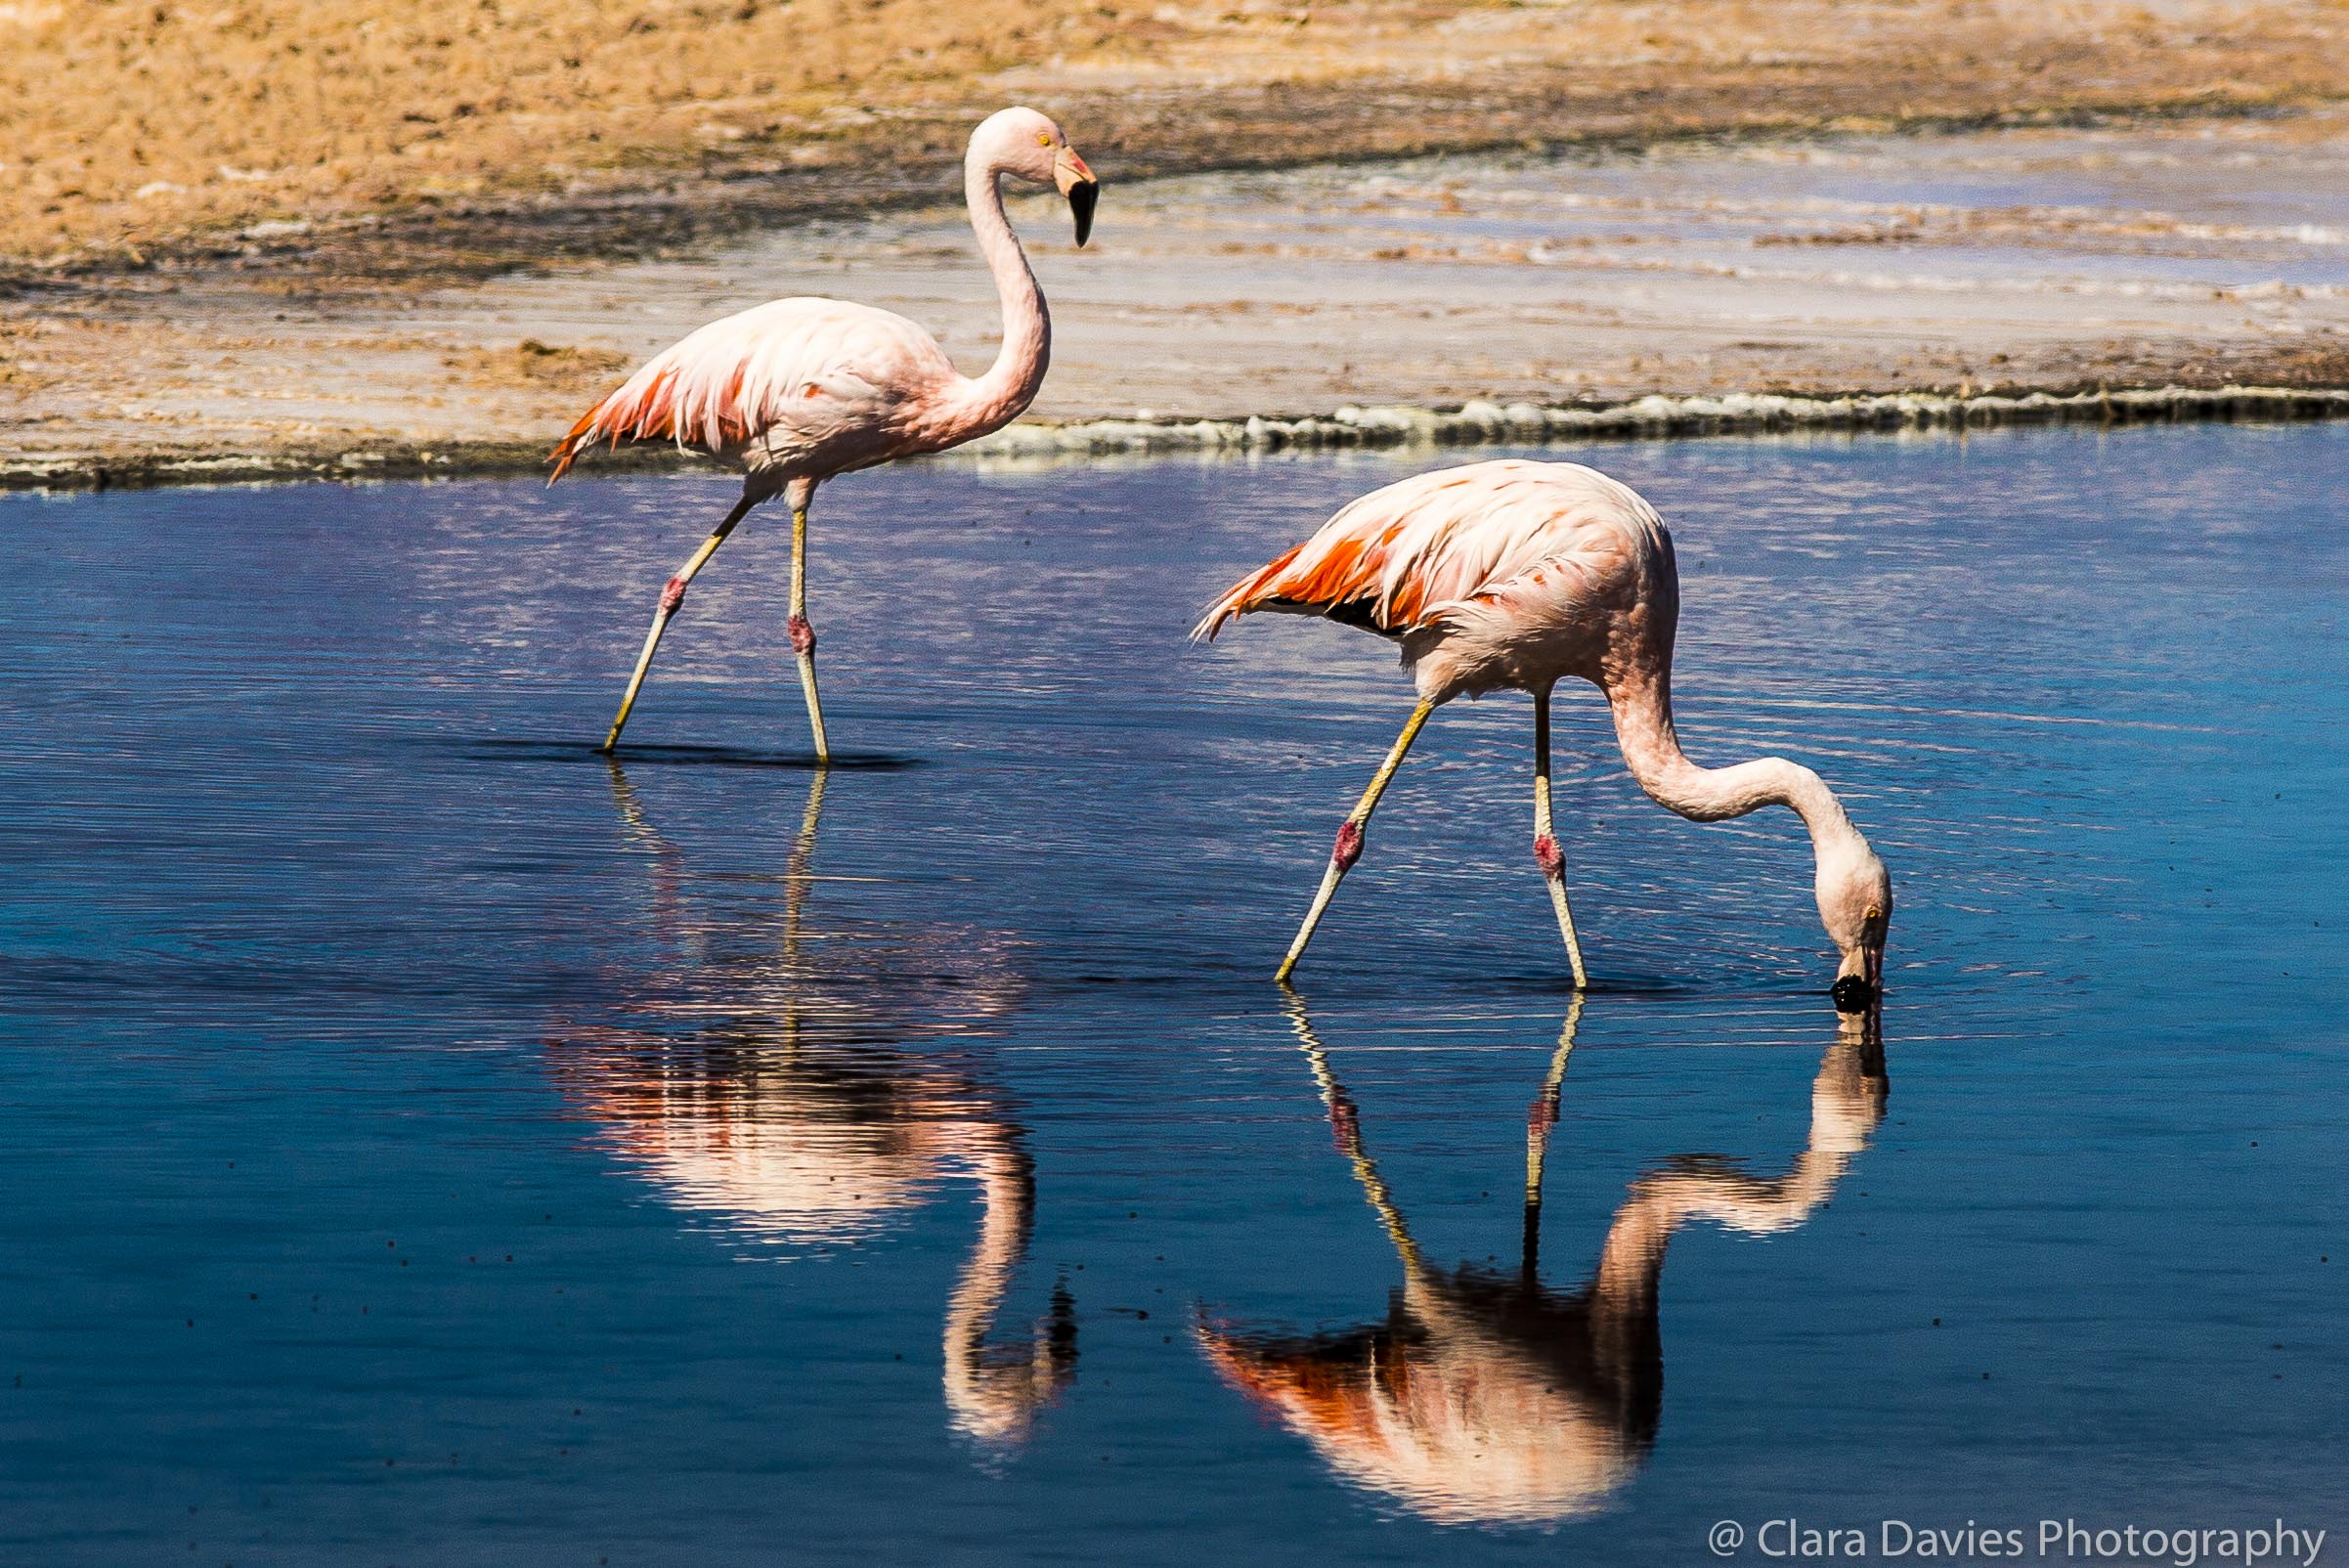 Chliean flamingos